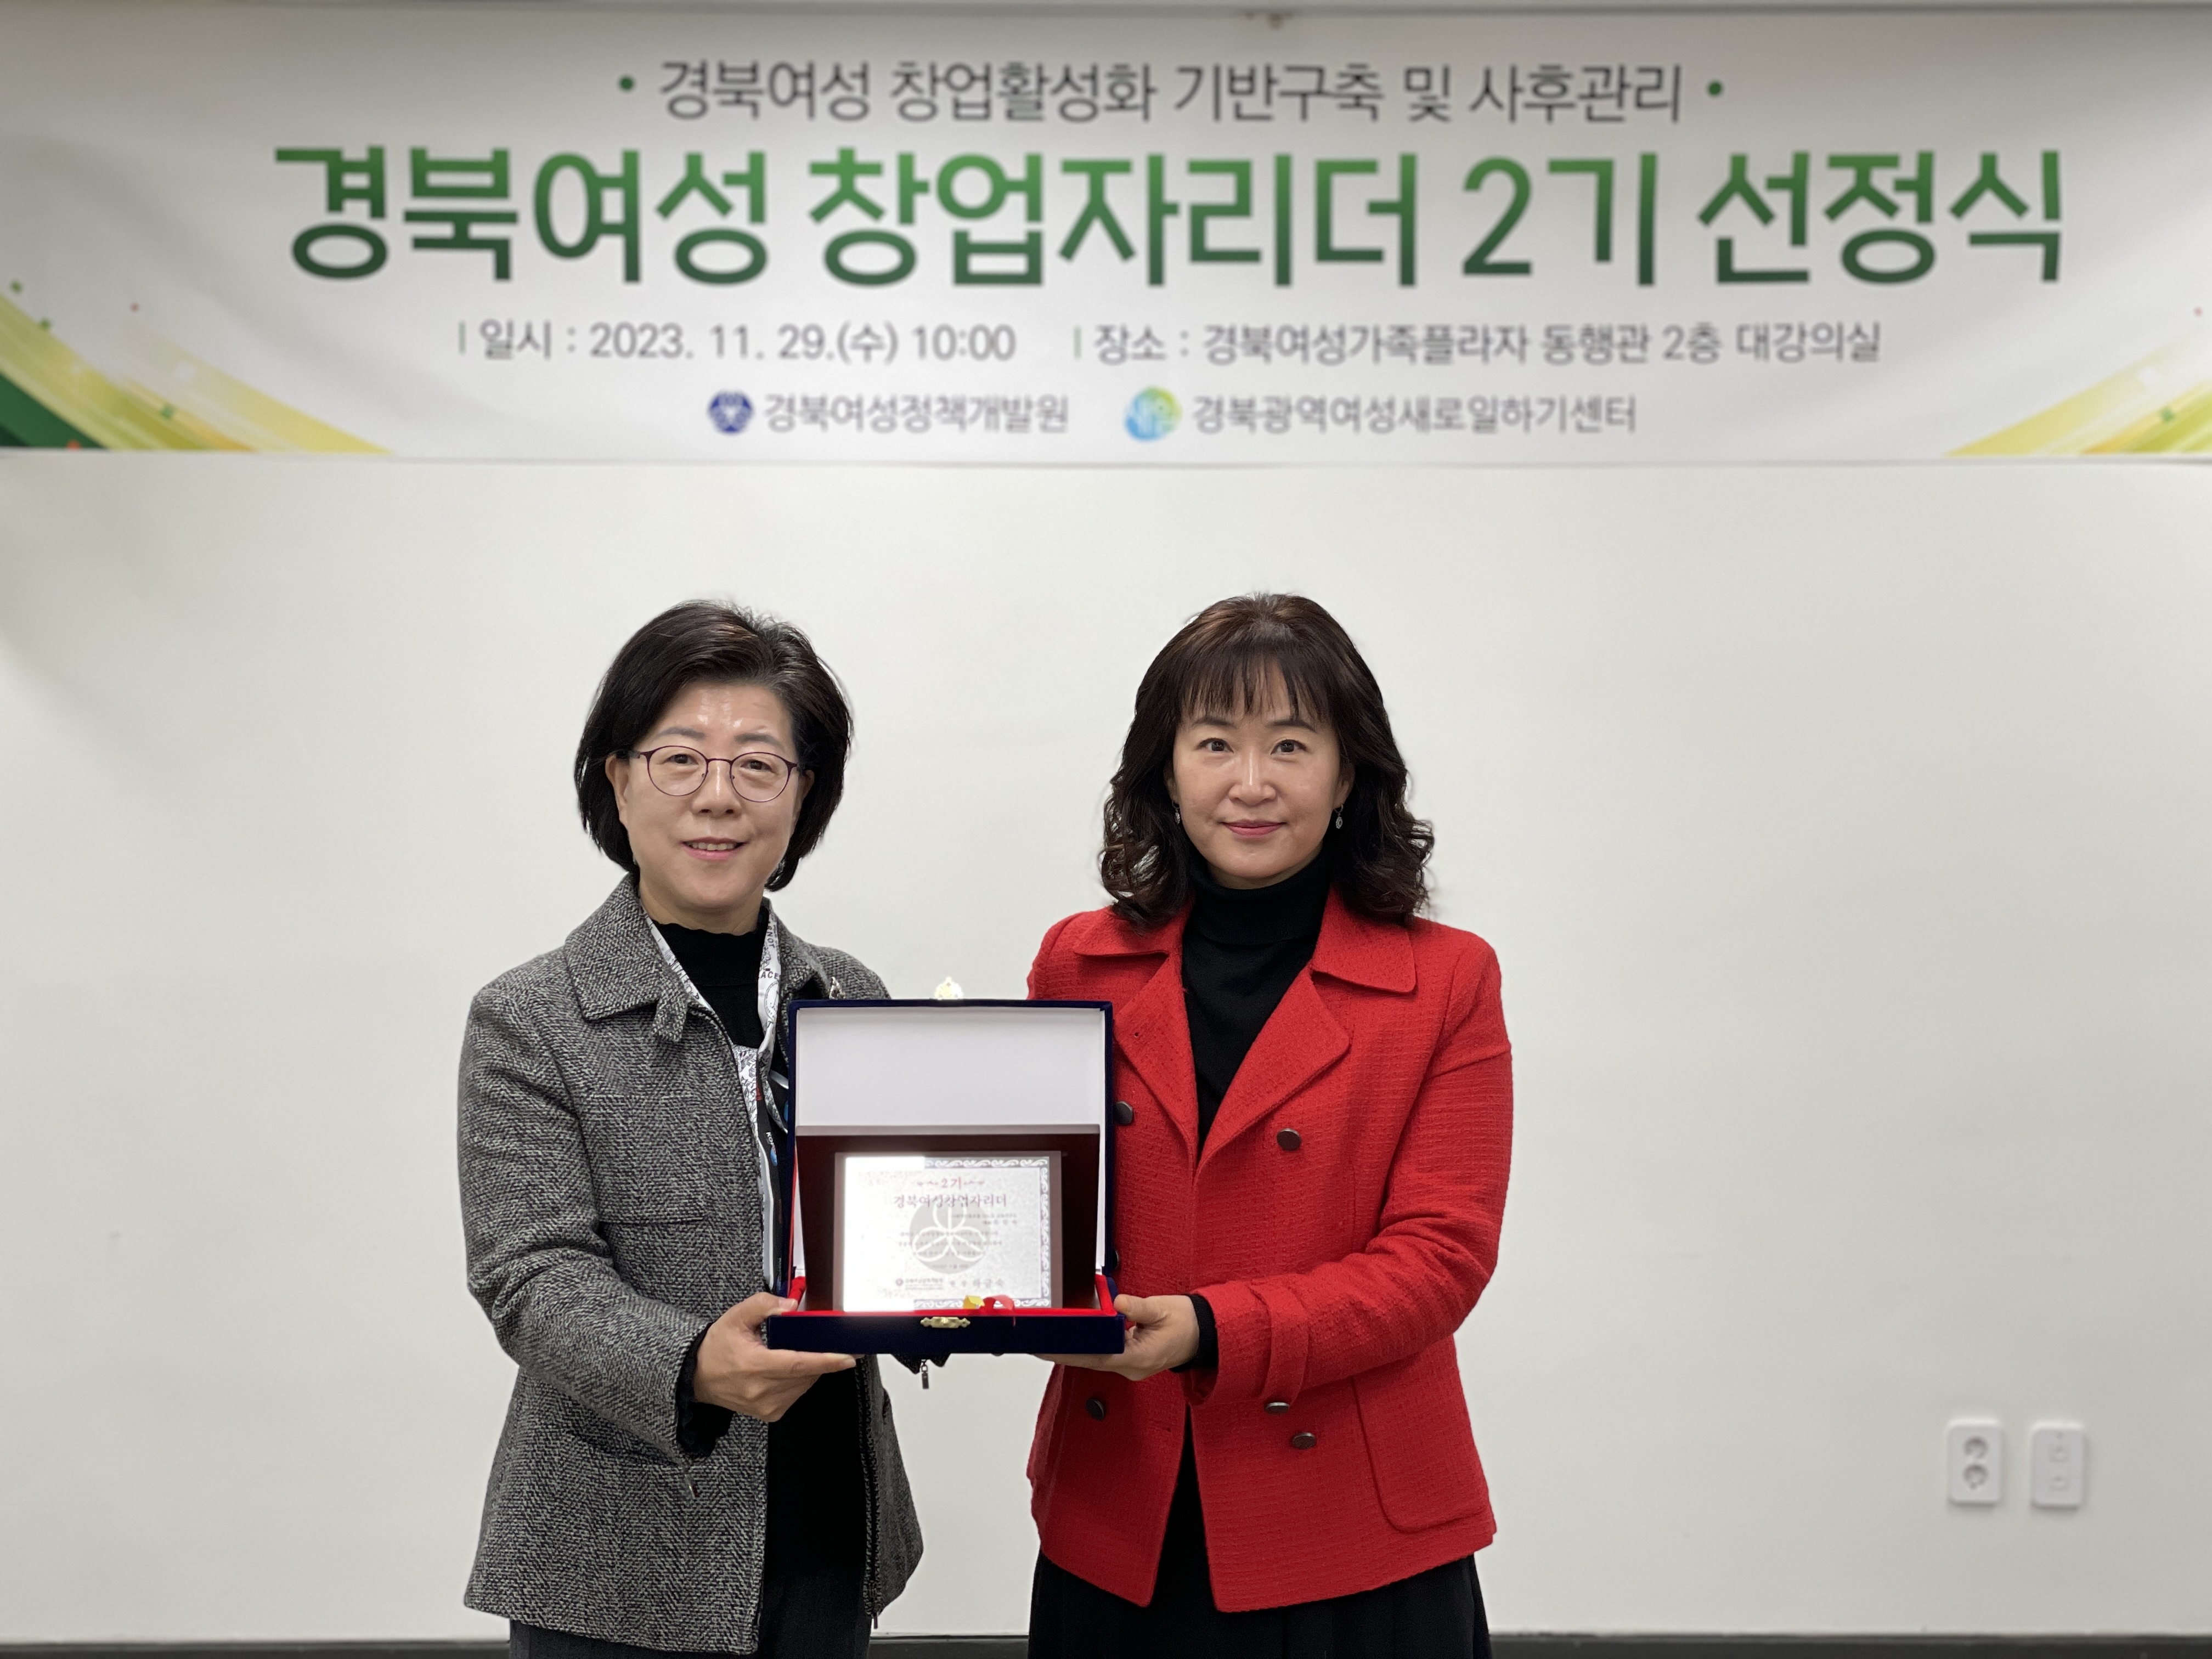 경북여성 창업자 리더 2기 선정식 9.jpg 이미지를 클릭하시면 원본크기를 보실 수 있습니다.